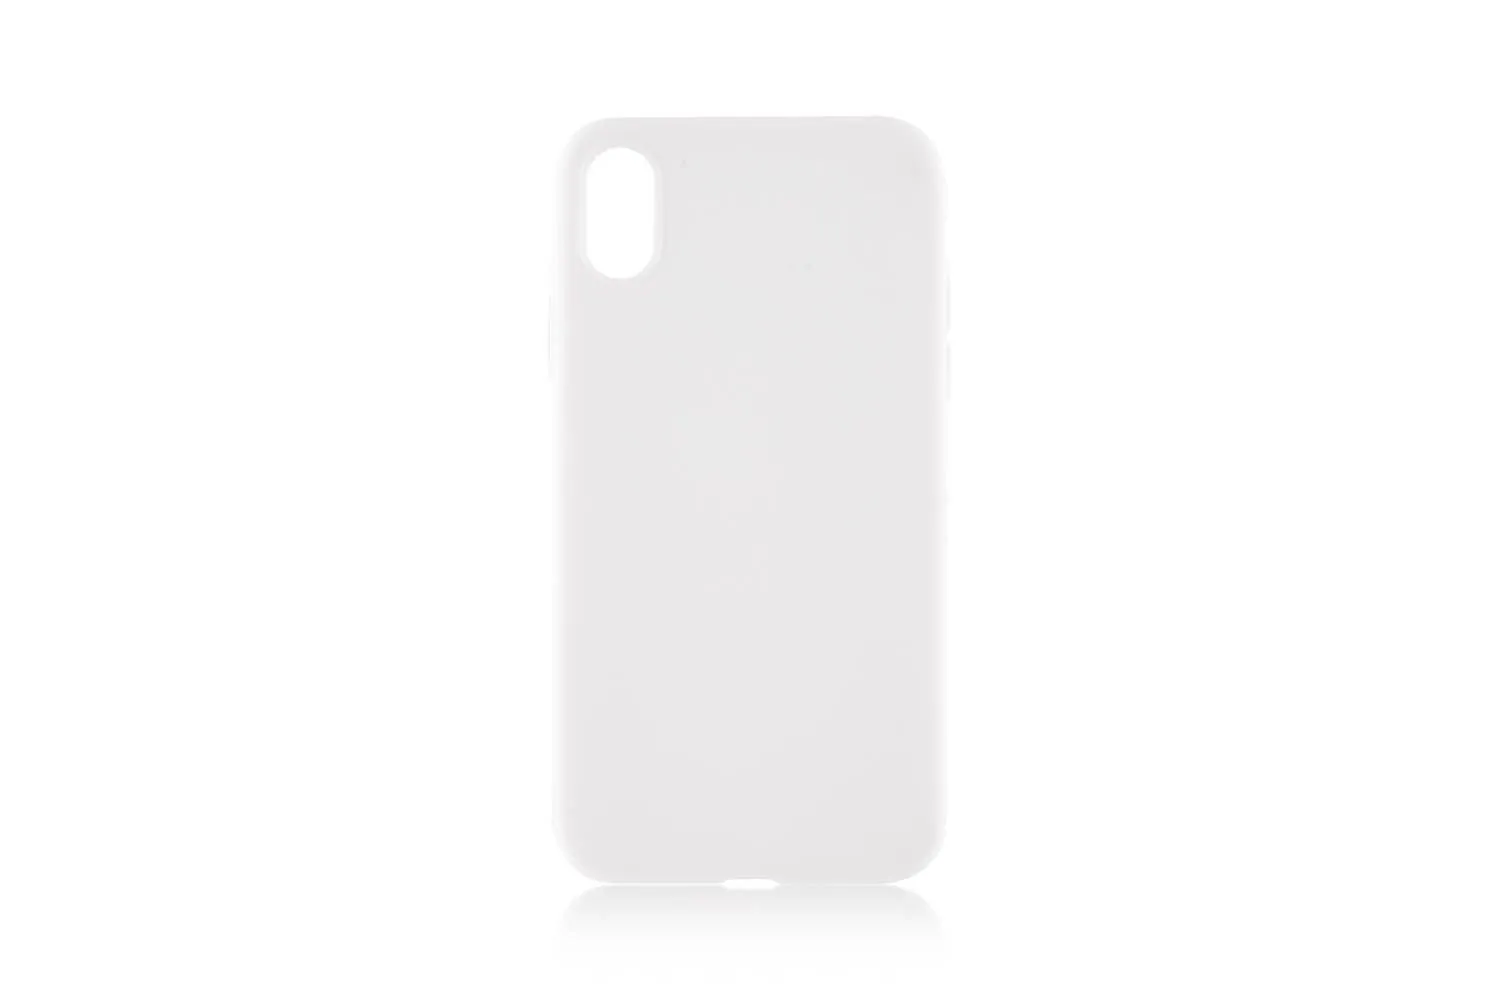 Чехол силиконовый для Apple iPhone Xr (белый)